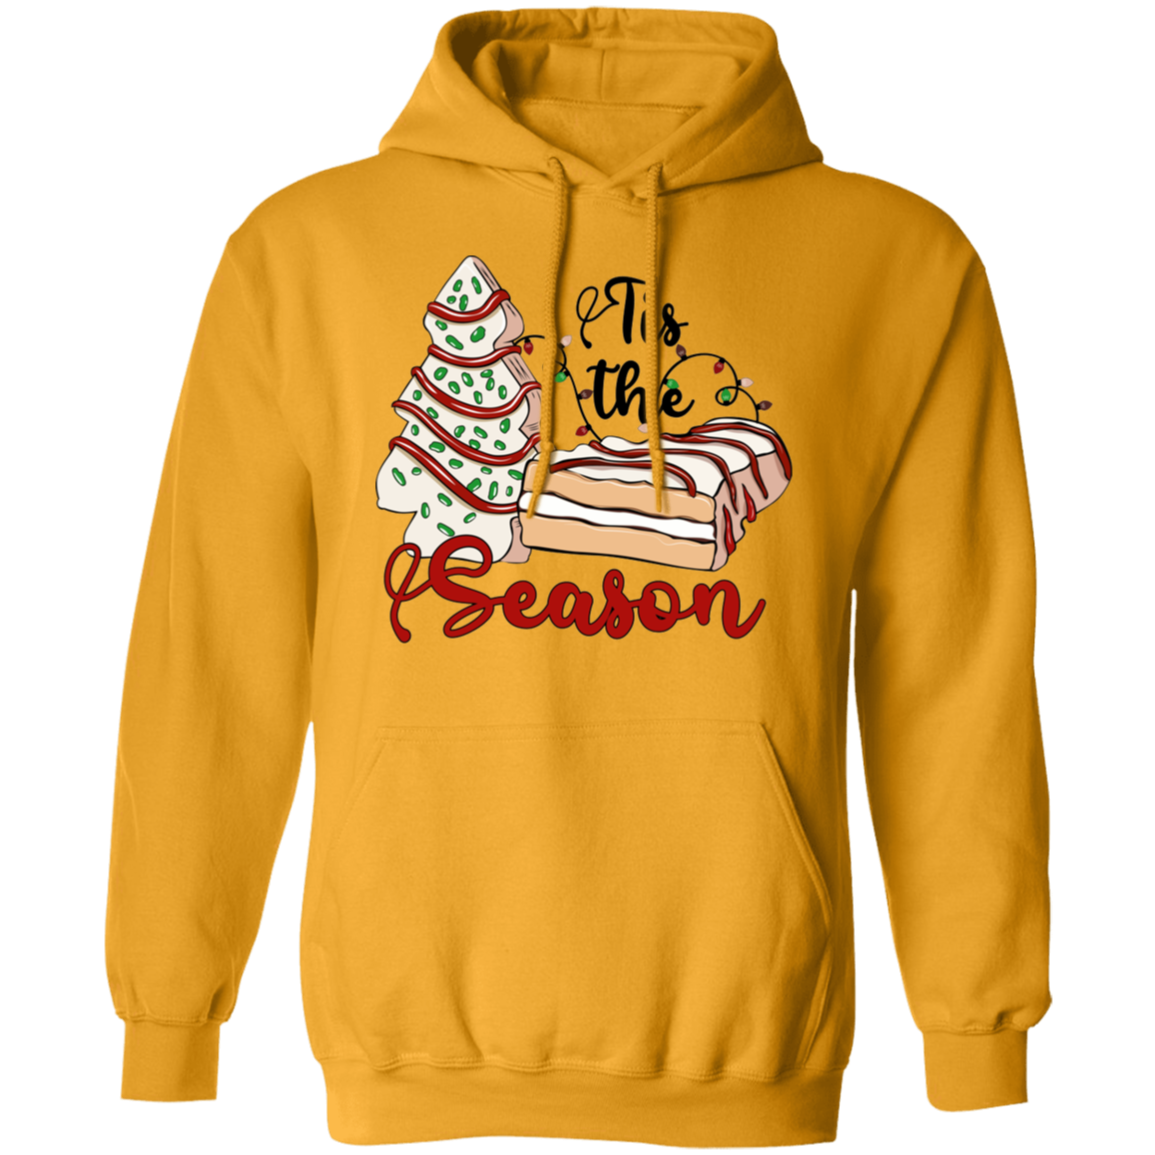 Tis The Season, regalo de pastel de Navidad - Sudadera con capucha unisex